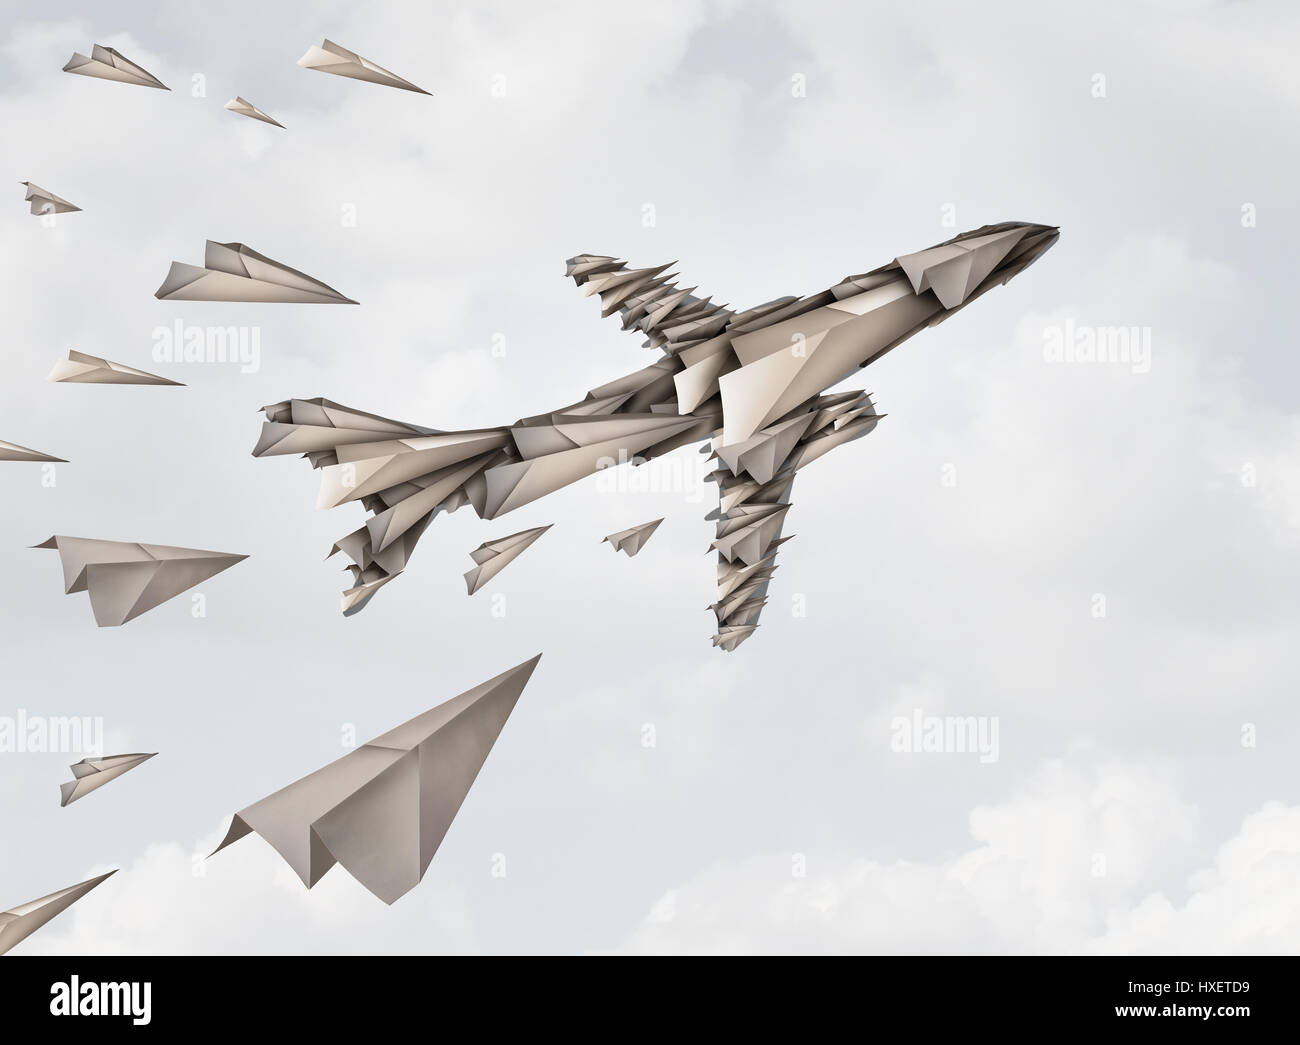 Teamarbeit Einheit Konzept und gemeinsame Anstrengung Symbol als eine Gruppe von Papierflieger zusammenfügen zu bilden eine Jet-Flugzeug-Form als ein Team. Stockfoto